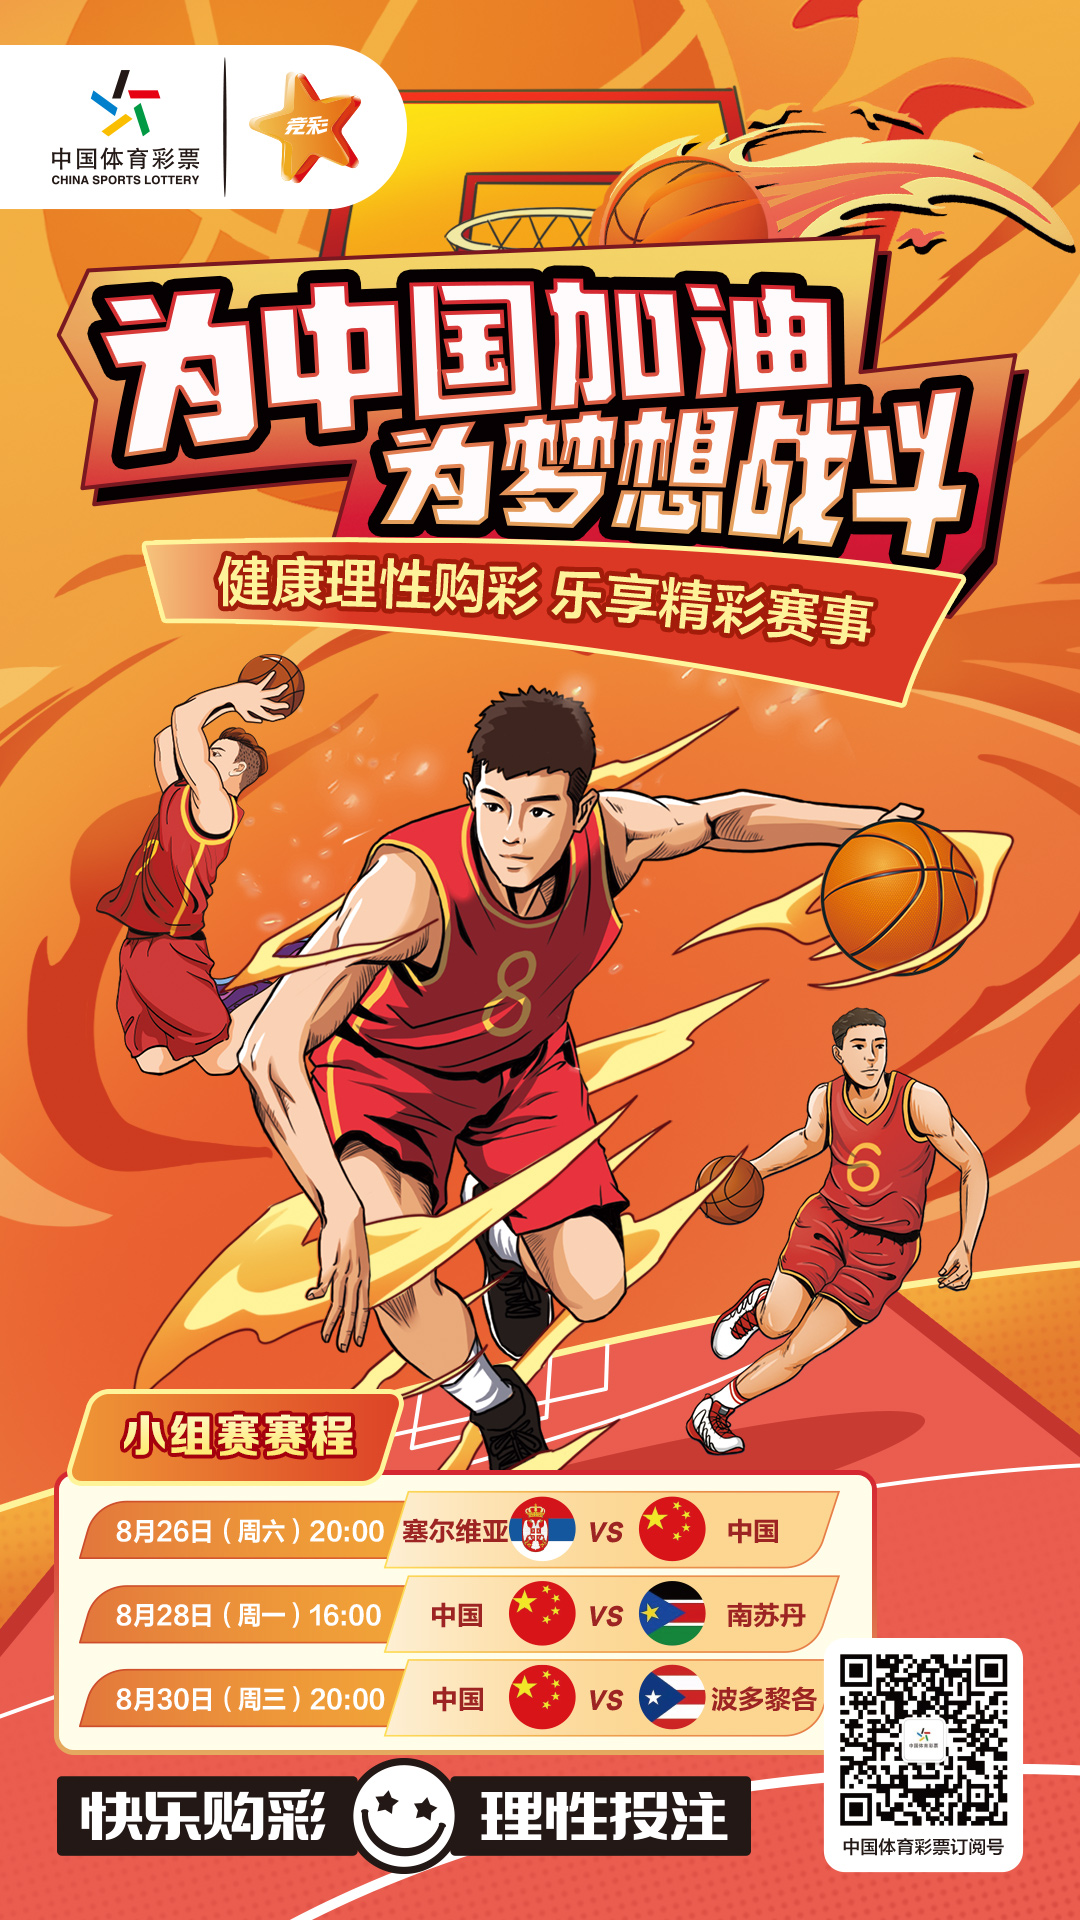 2022年男篮世界杯预选赛赛程,中国男篮最新赛程表-马超体育新闻网